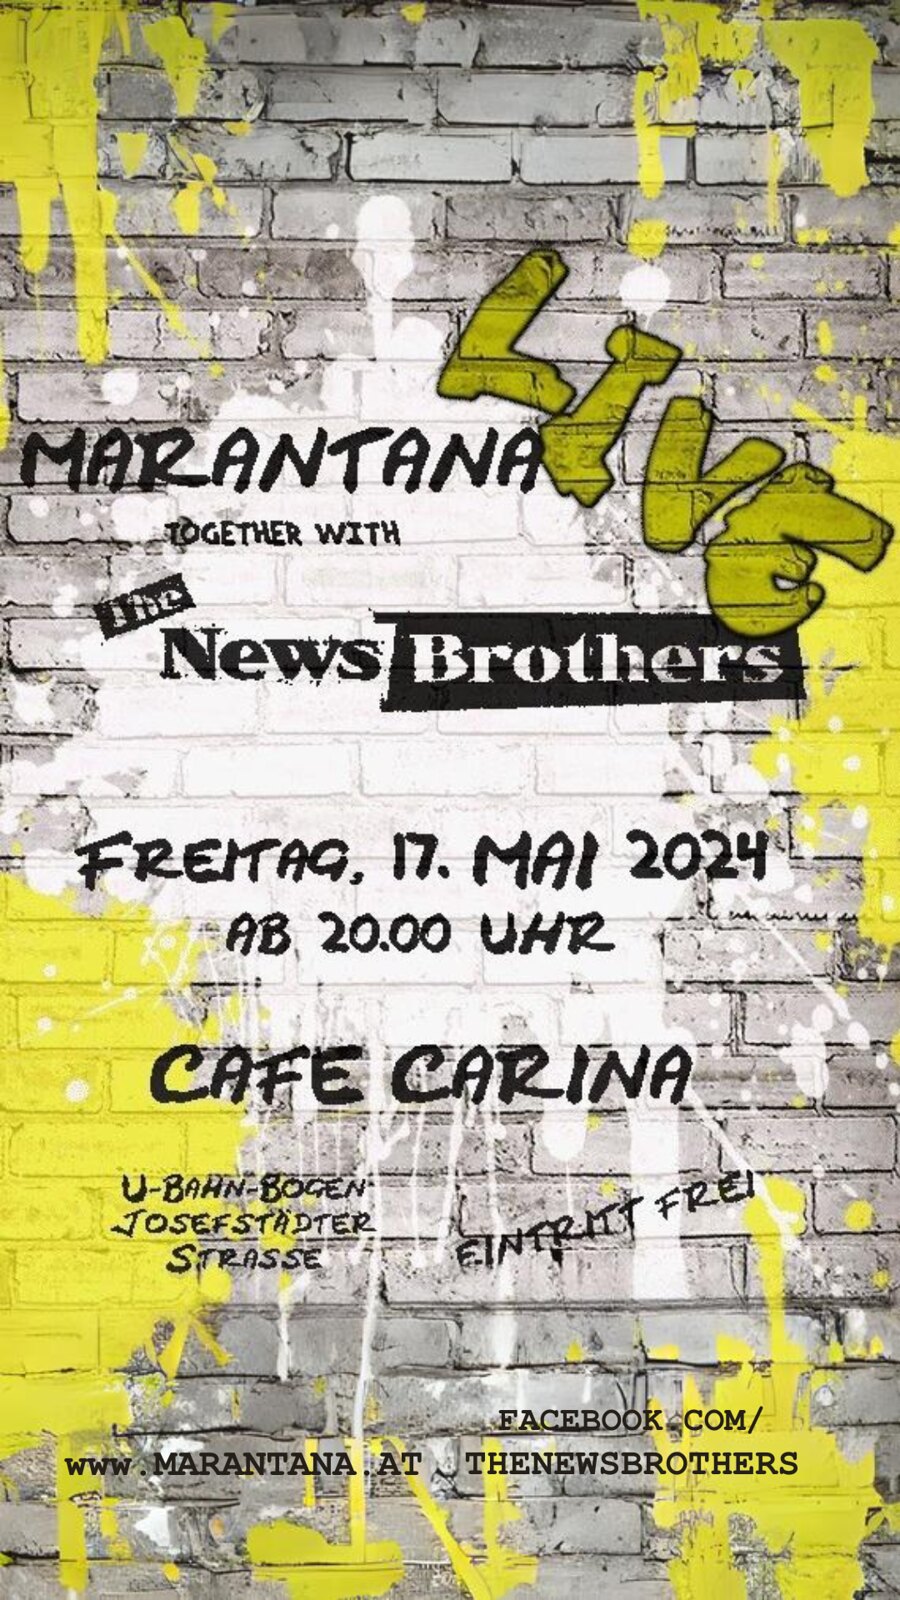 Marantana / The Newsbrothers am 17. May 2024 @ Café Carina.